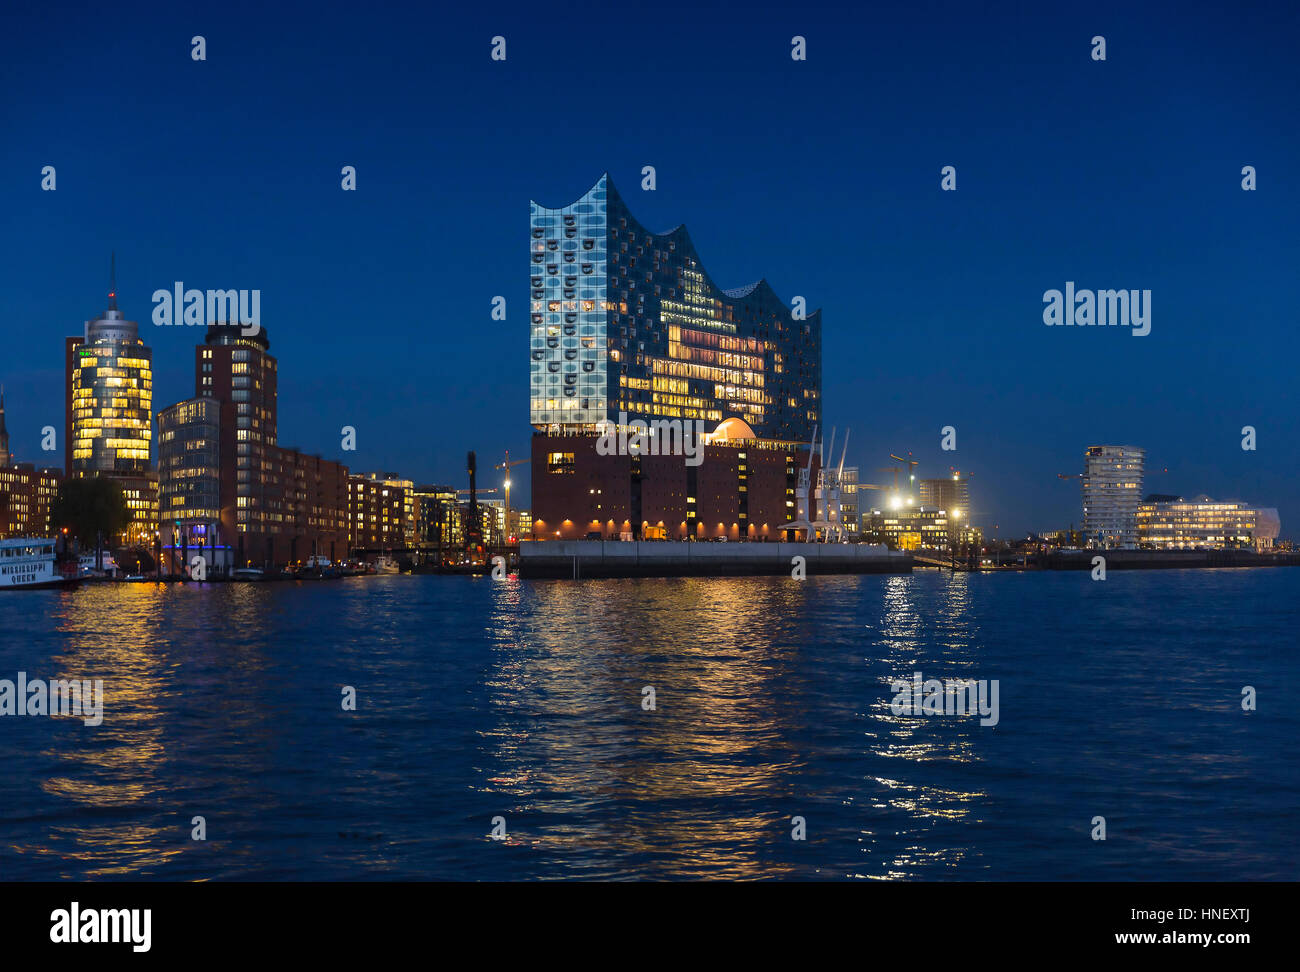 Elbphilharmonie, beleuchtet, Abend, Hamburg Deutschland Stockfoto